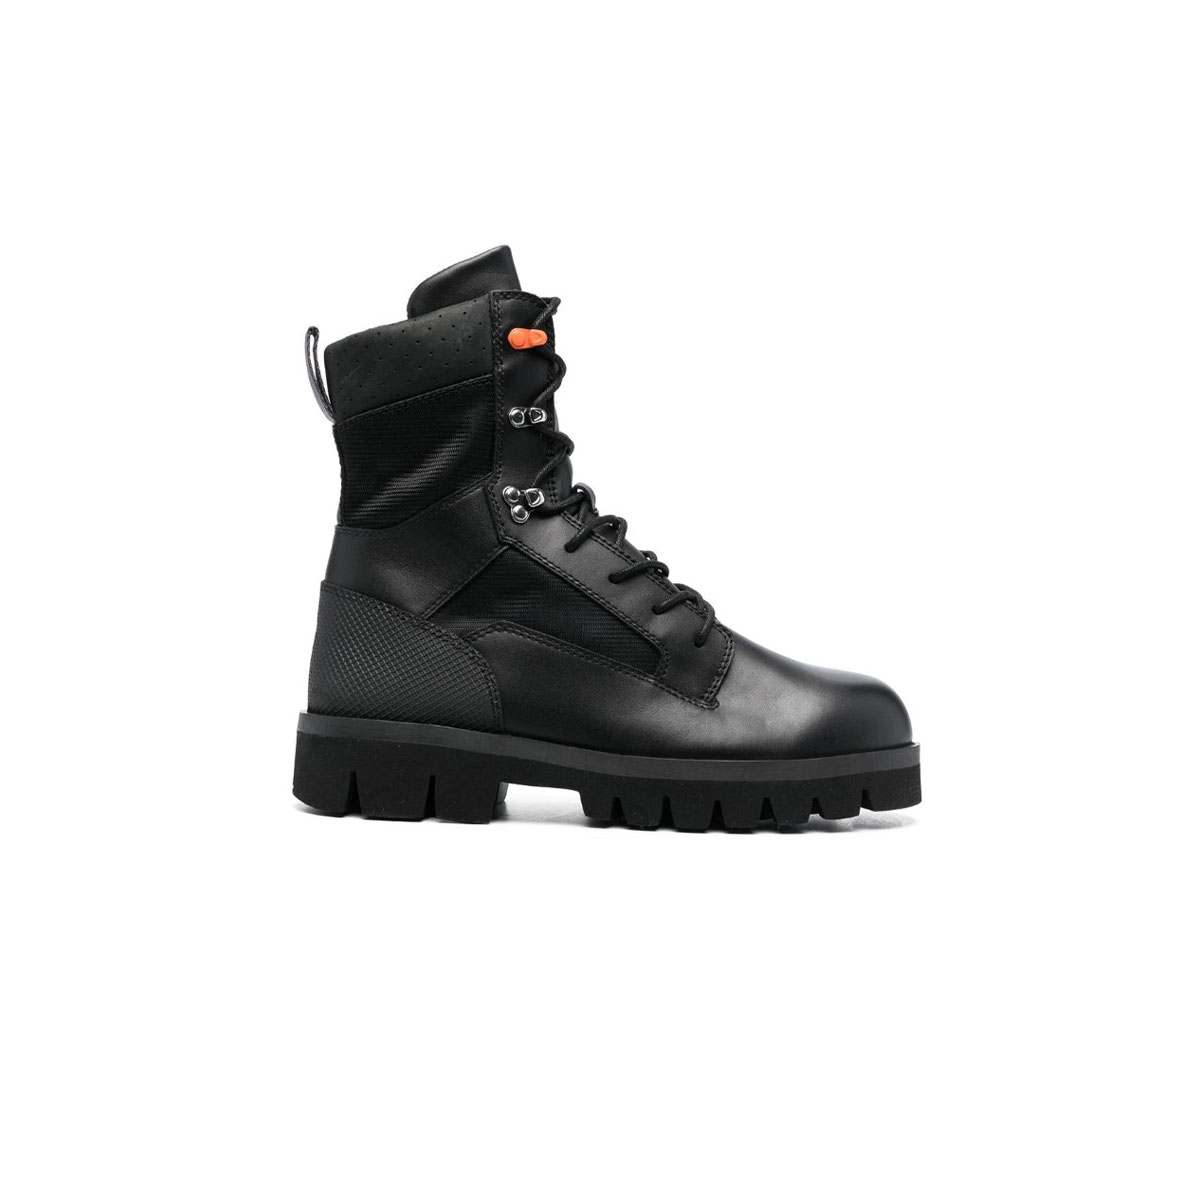 Ανδρικό Μαύρο Lace Up Military Boots HERON PRESTON Παπούτσια